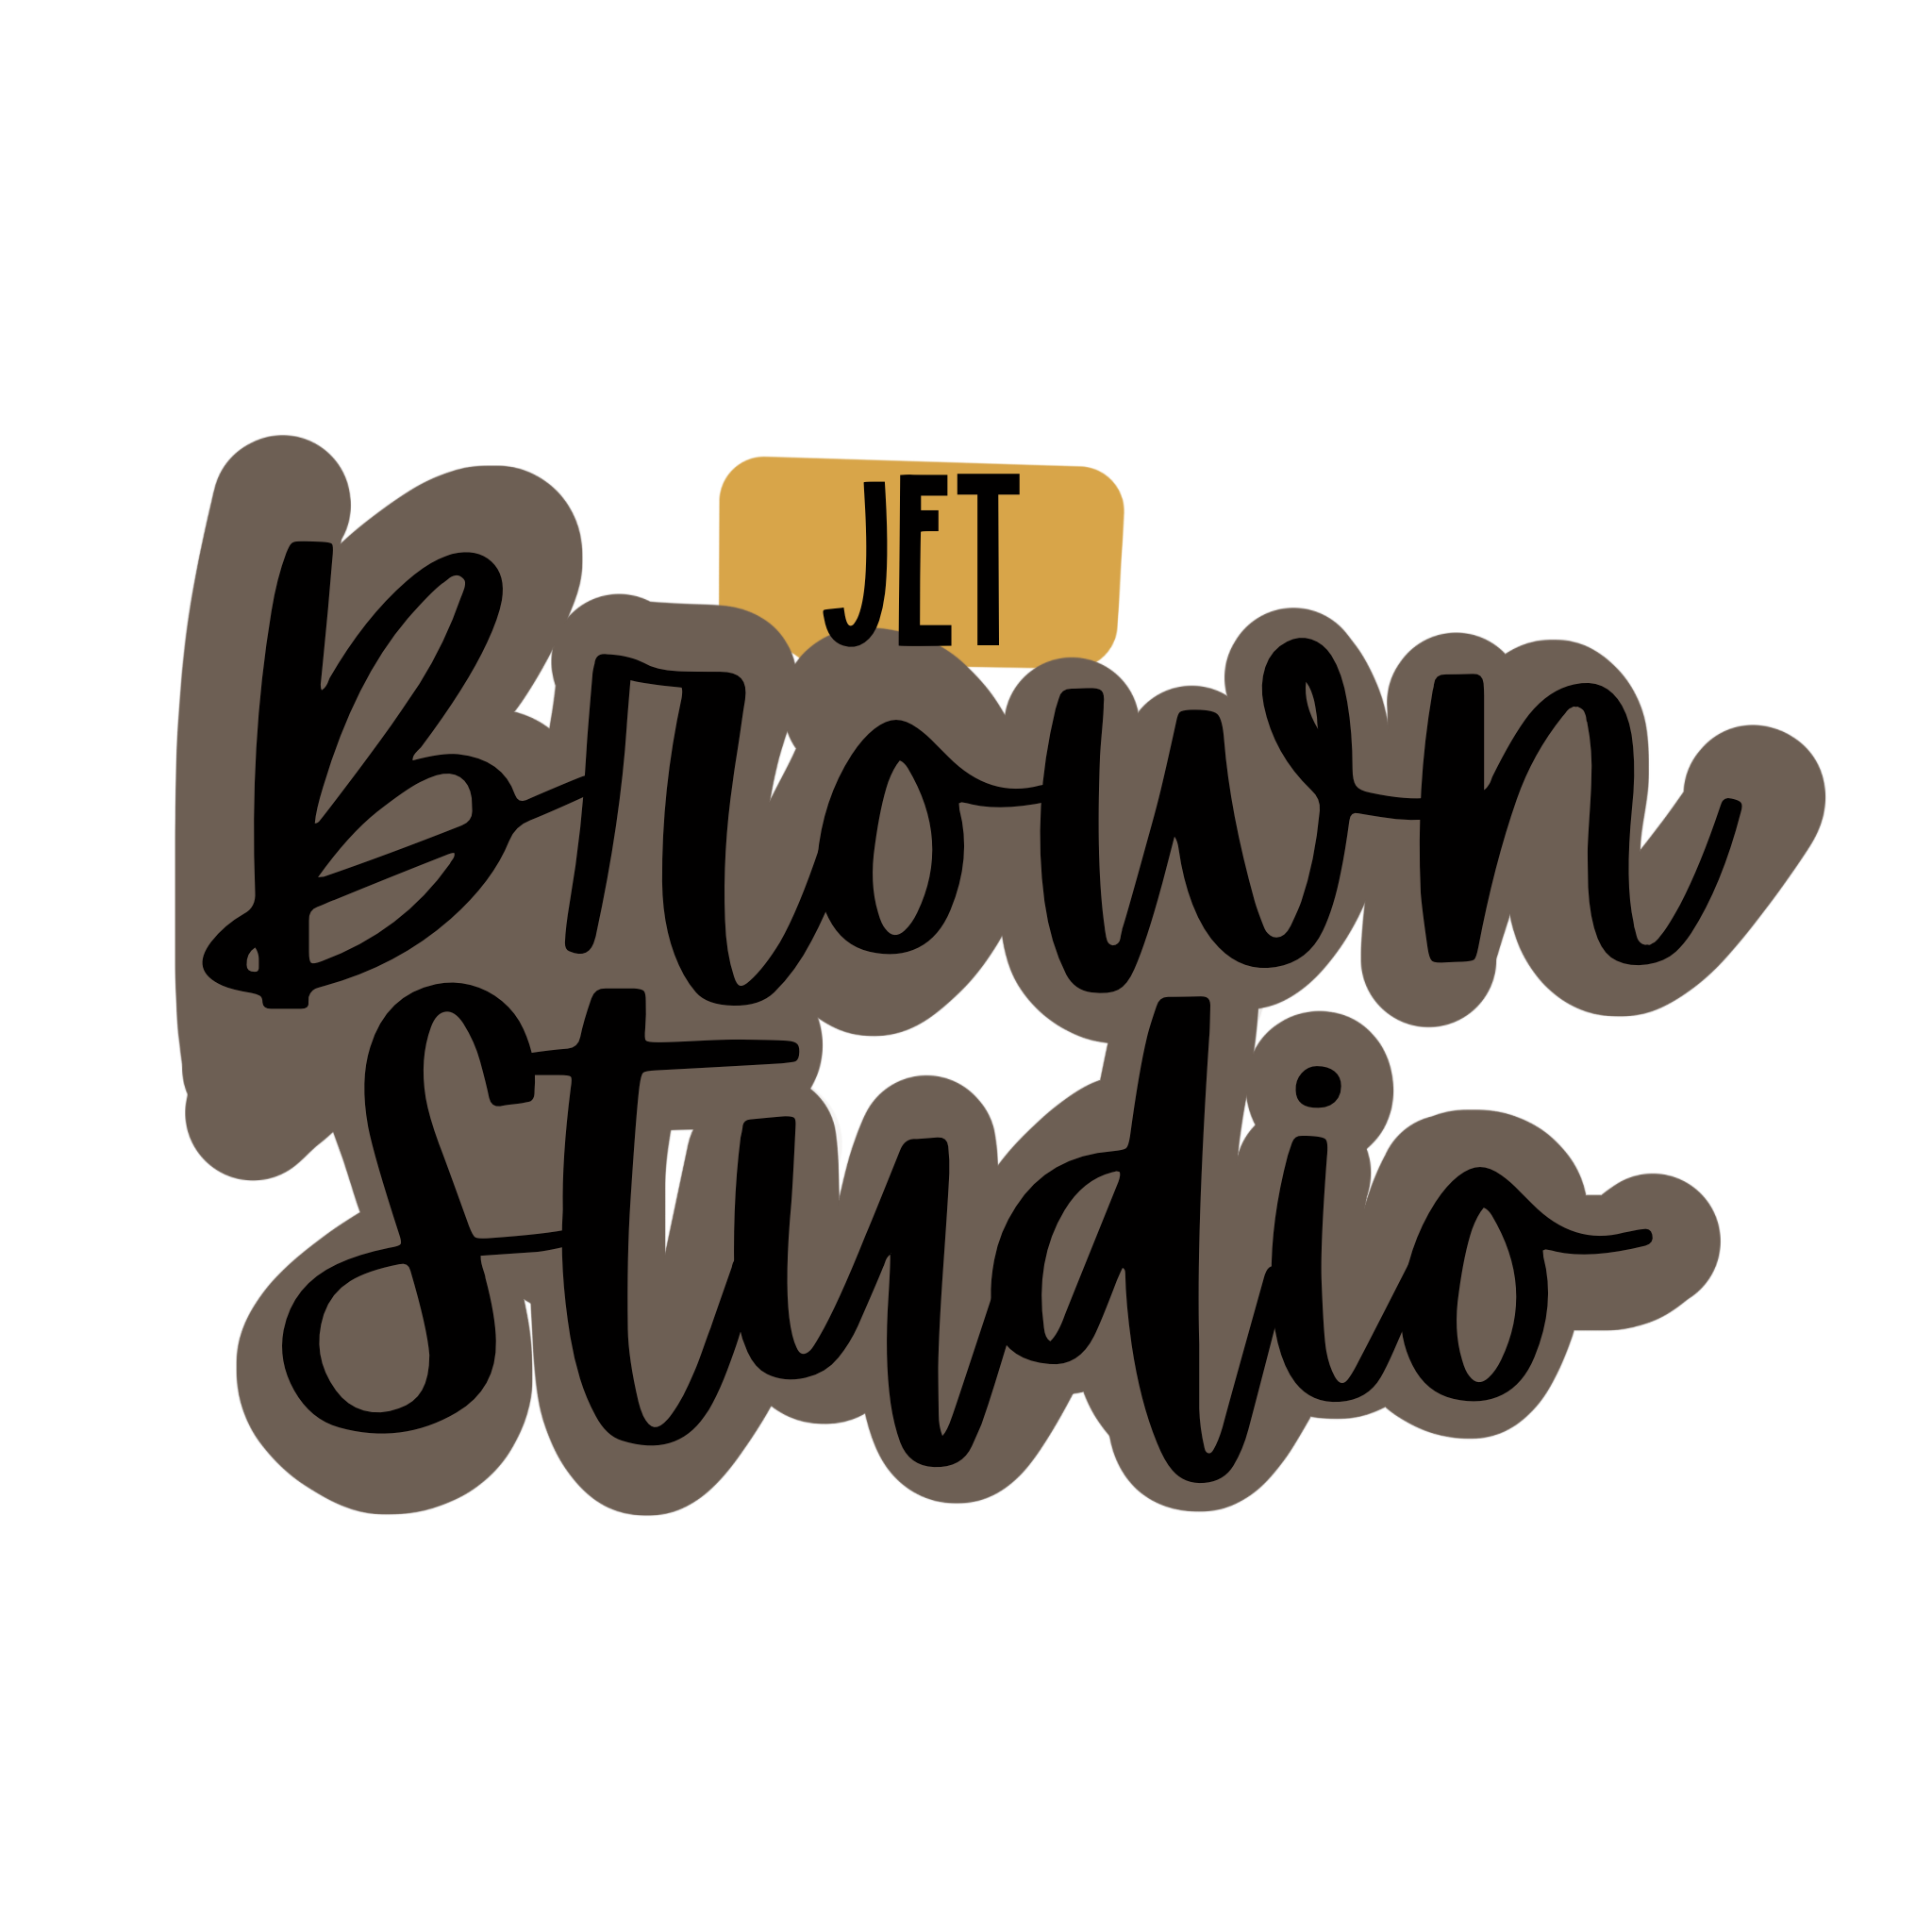 Jet Brown Studio